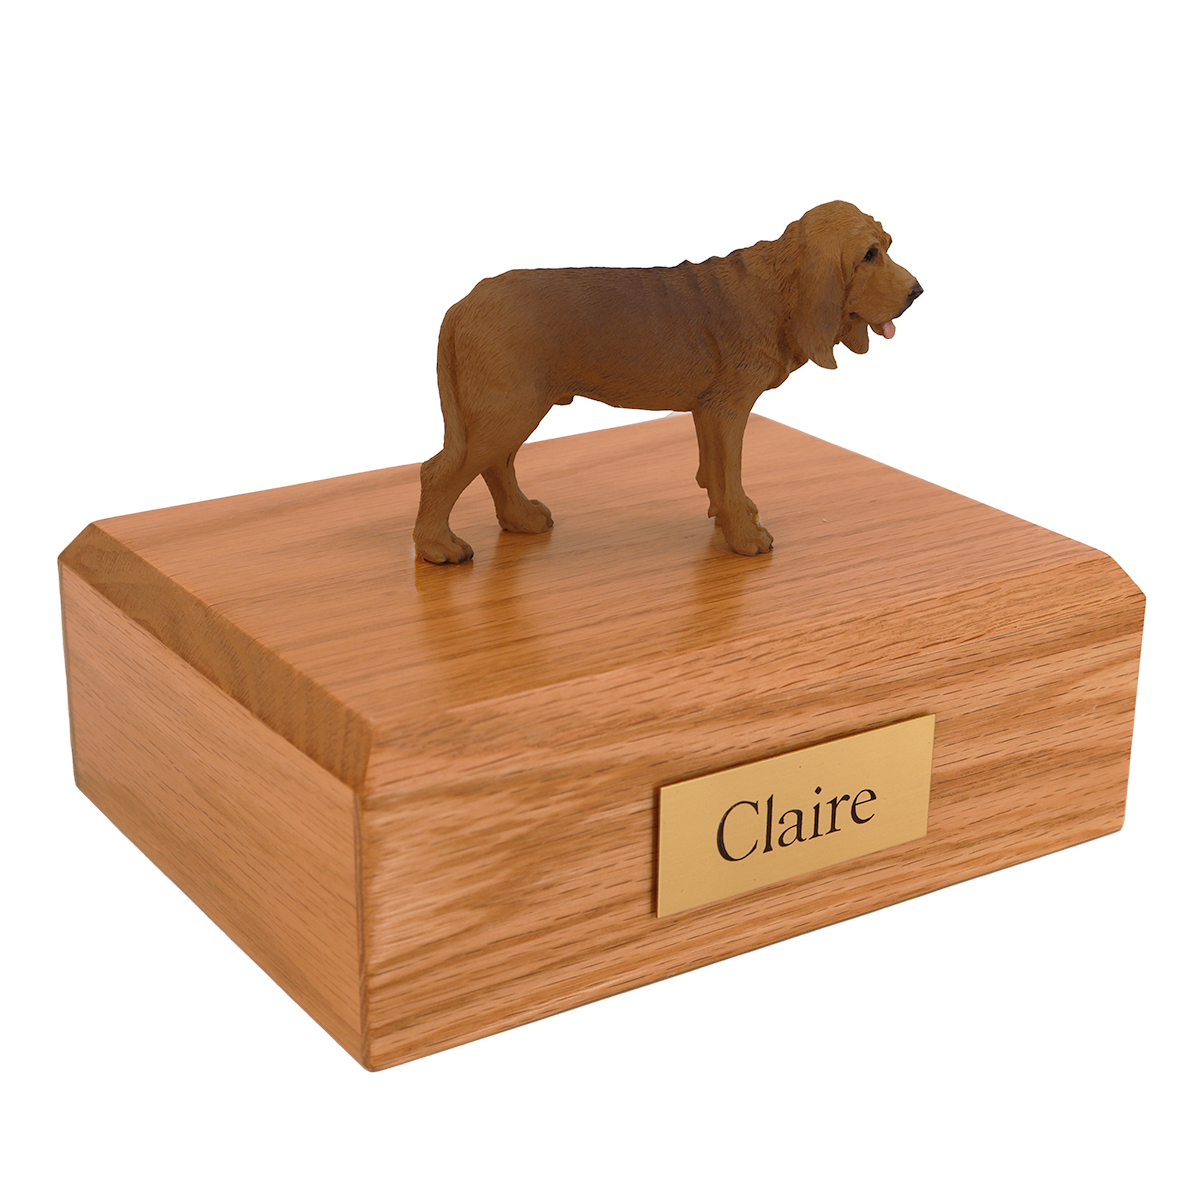 Dog, Bloodhound - Figurine Urn